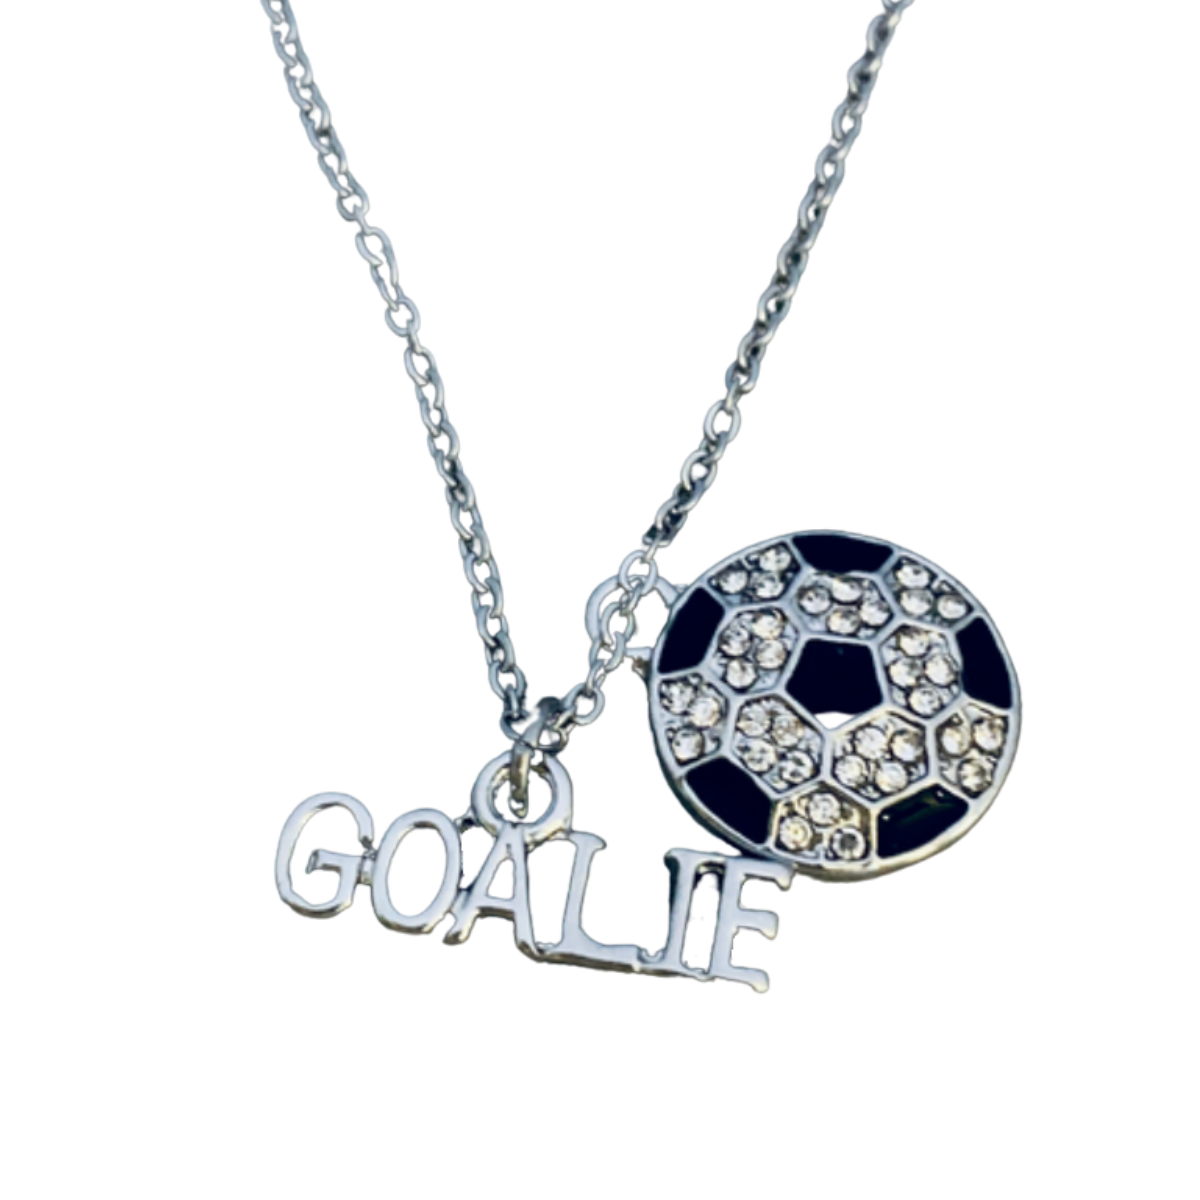 Soccer Goalie Necklace